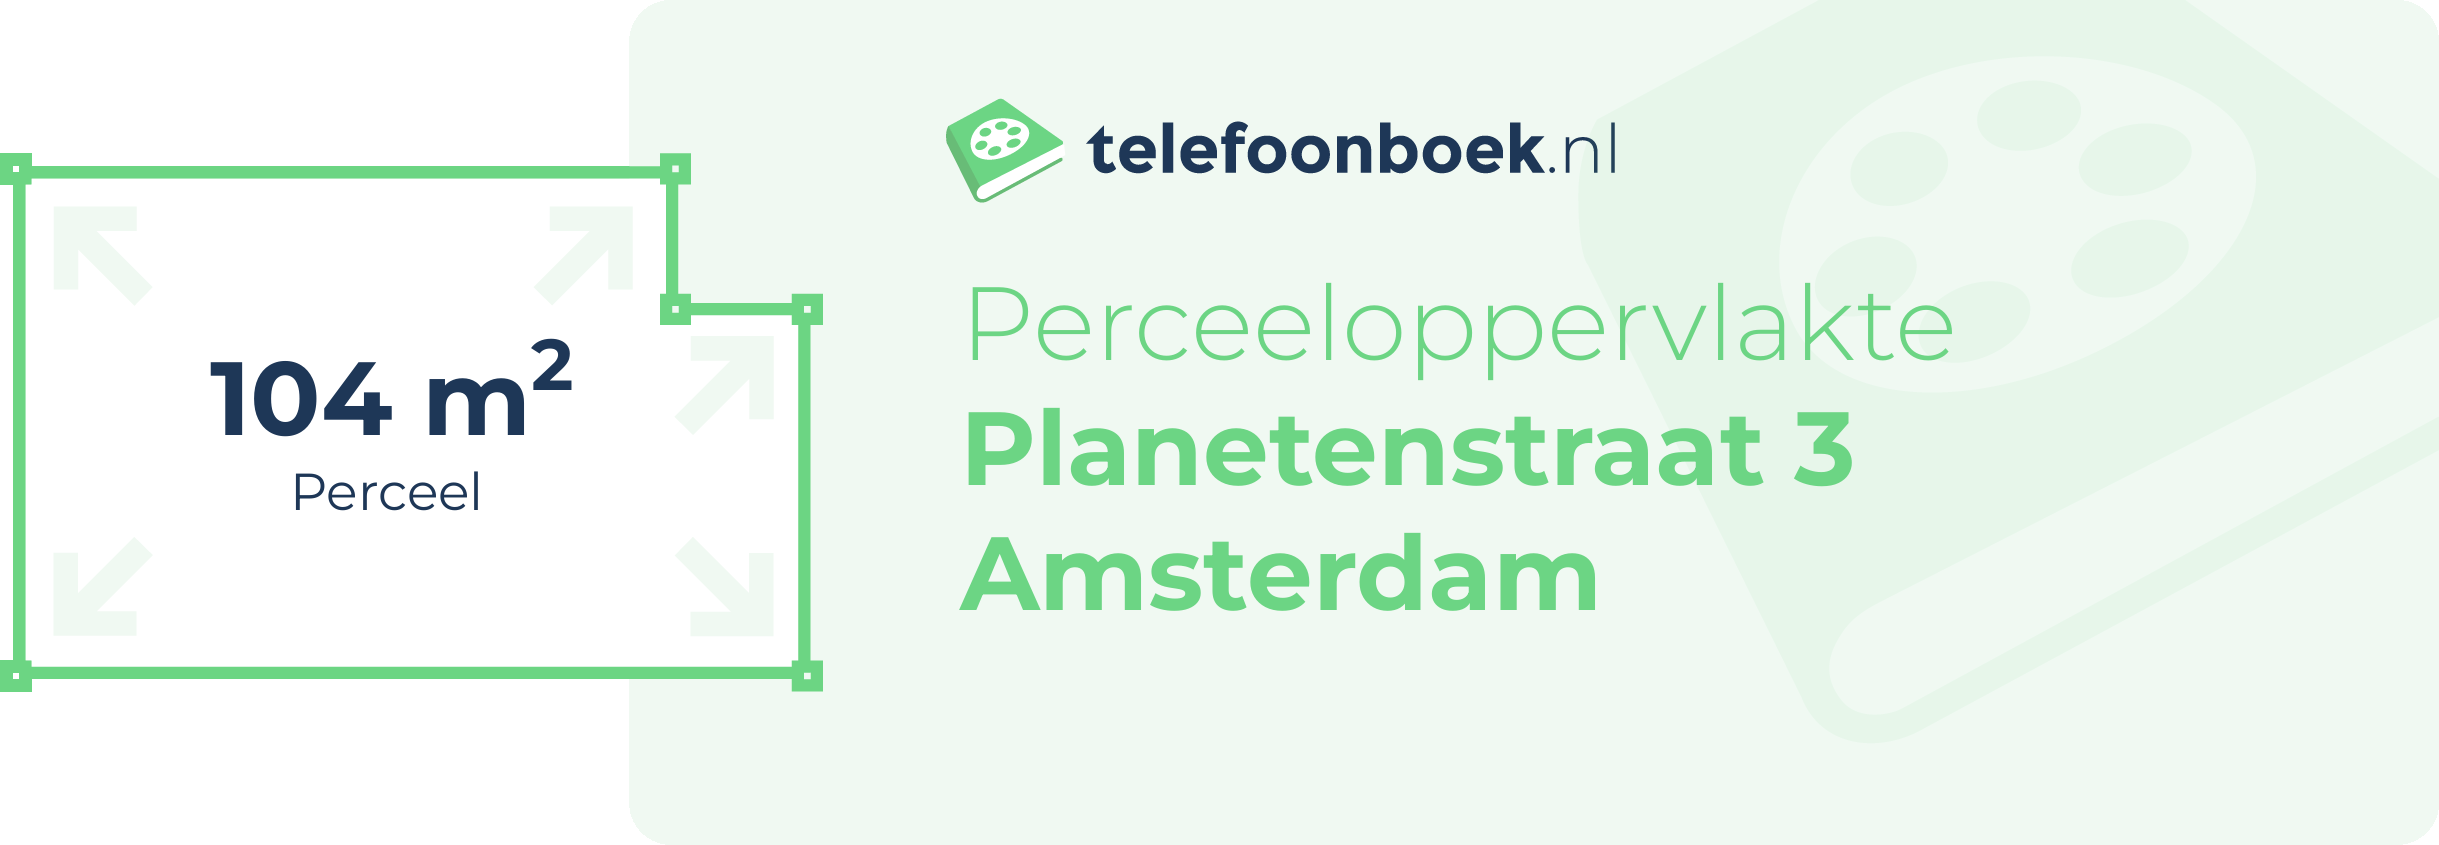 Perceeloppervlakte Planetenstraat 3 Amsterdam